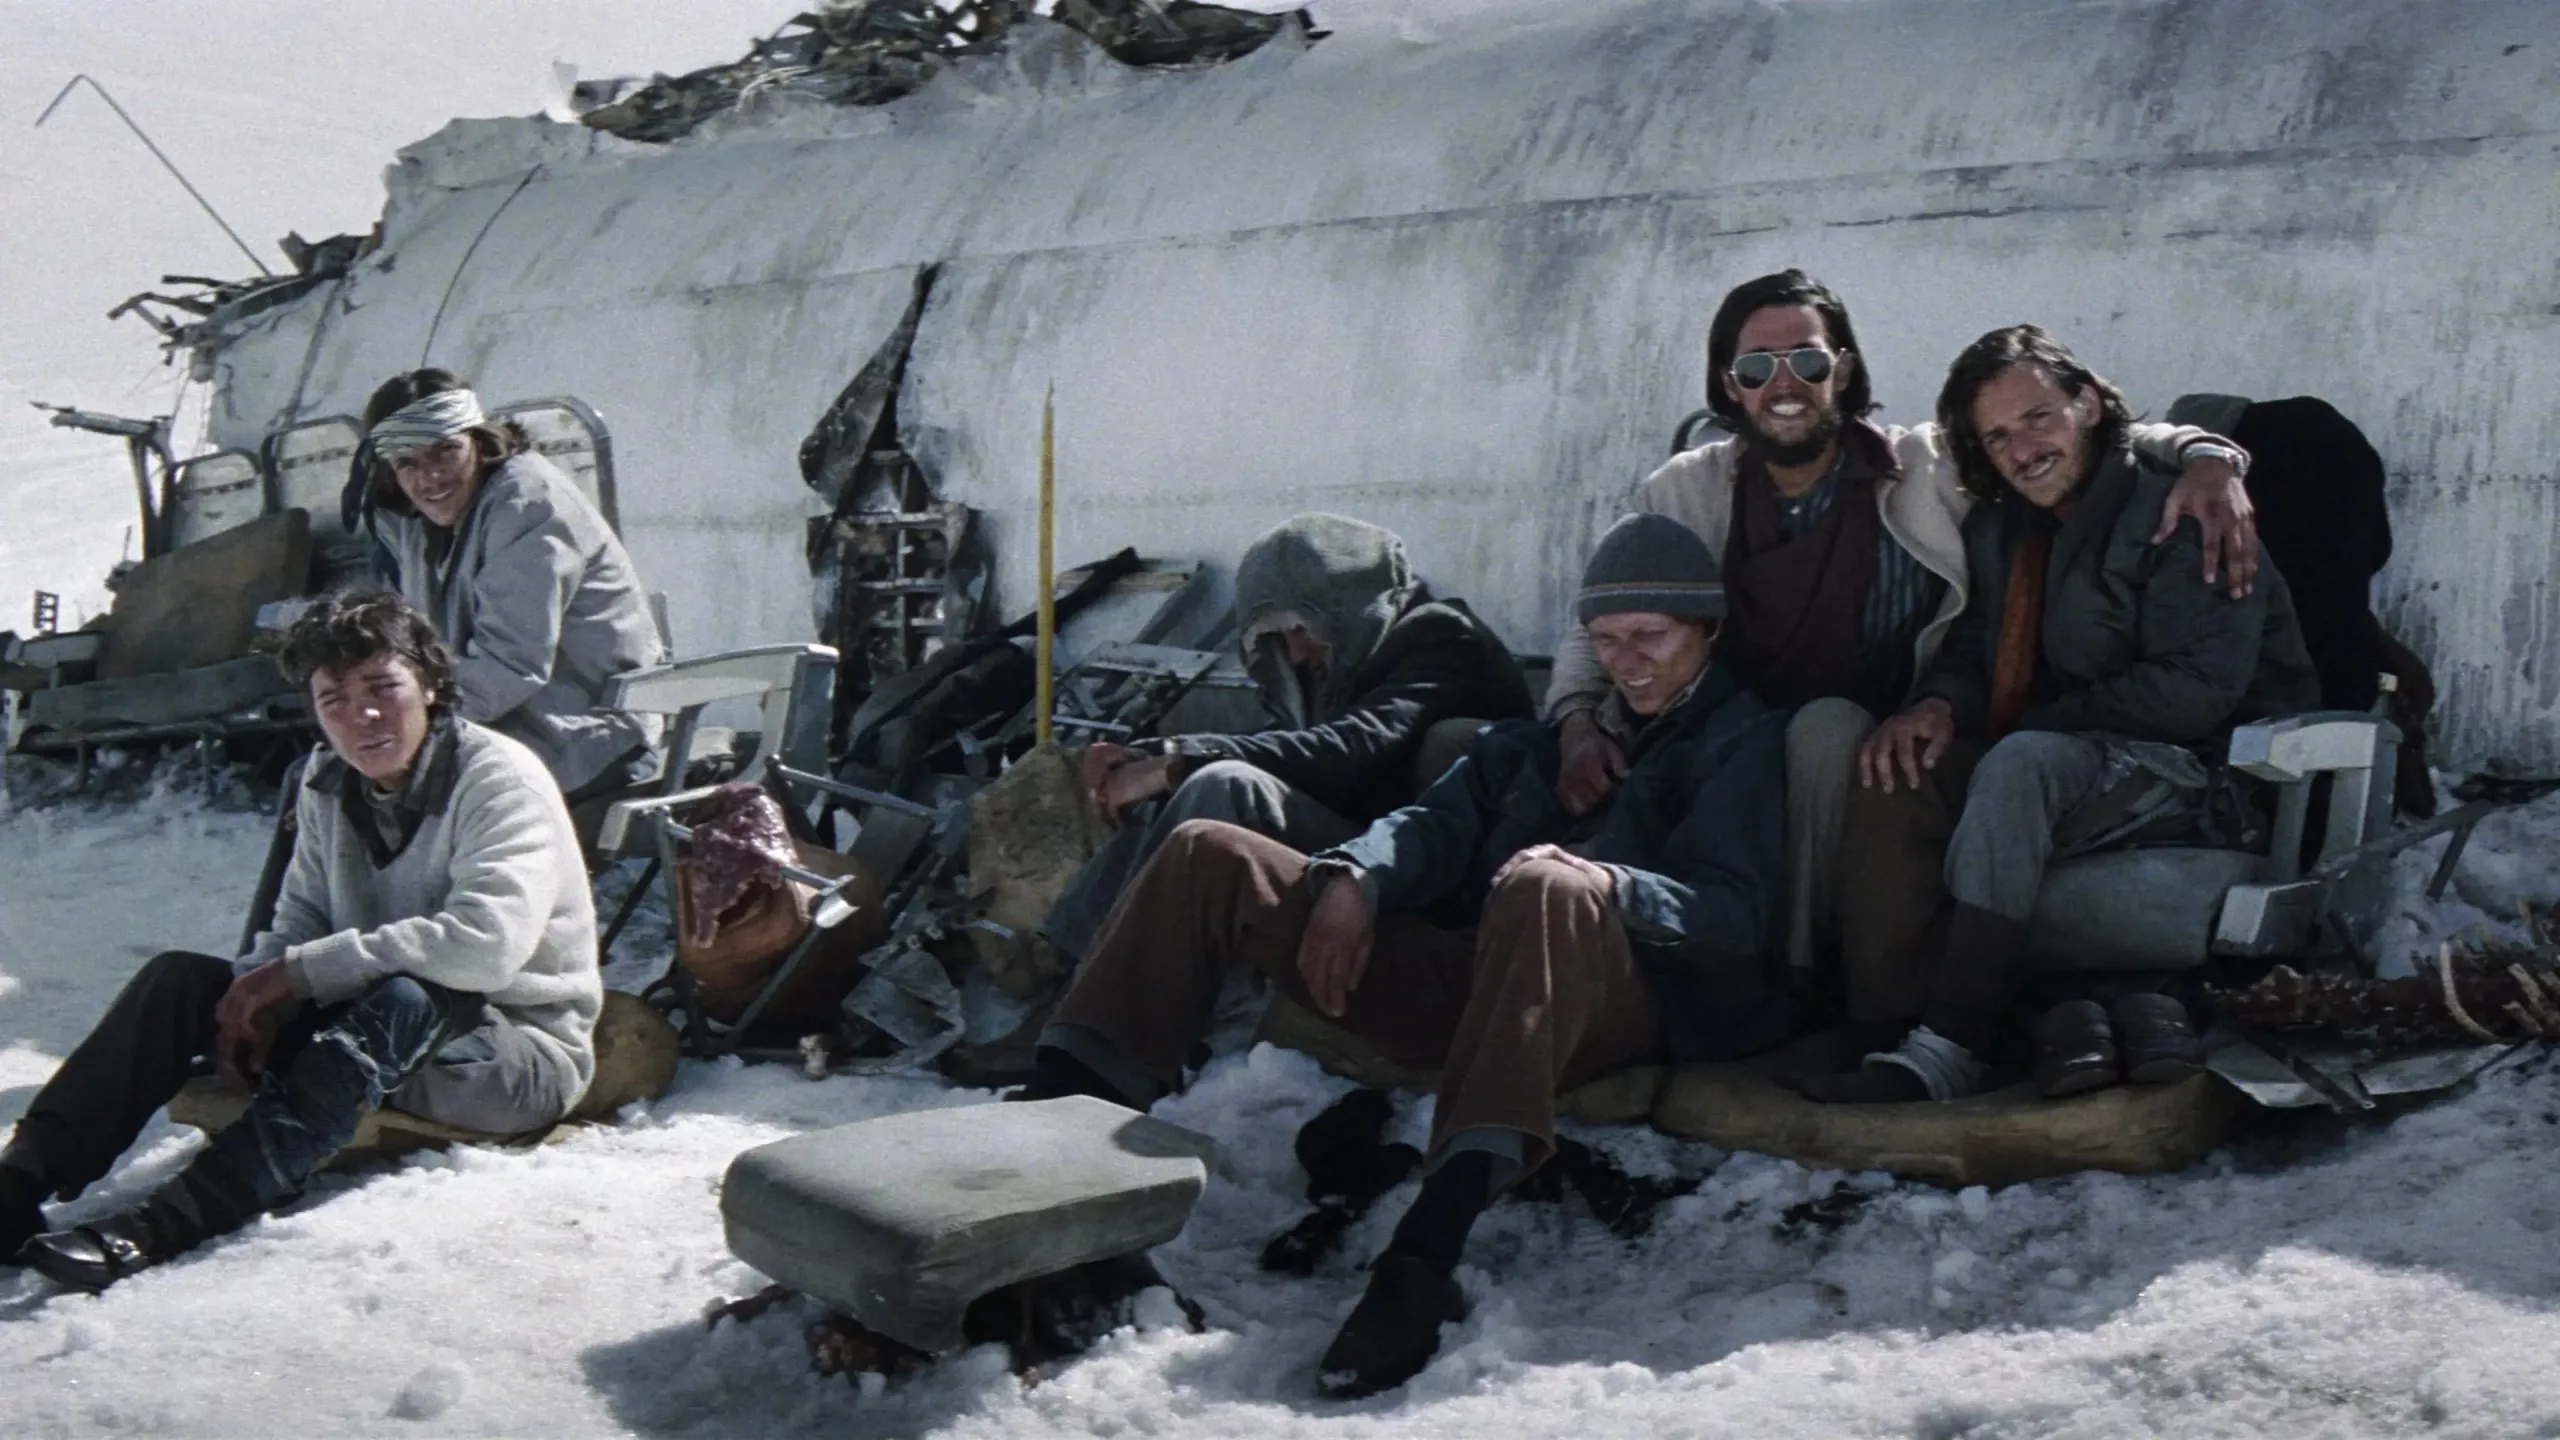 Tout le groupe de survivants d'un crash aérien dans les Andes du film Le cercle des neiges, posent assis contre l'épave de leur avion, les uns à côté des autres, certains avec le sourire.